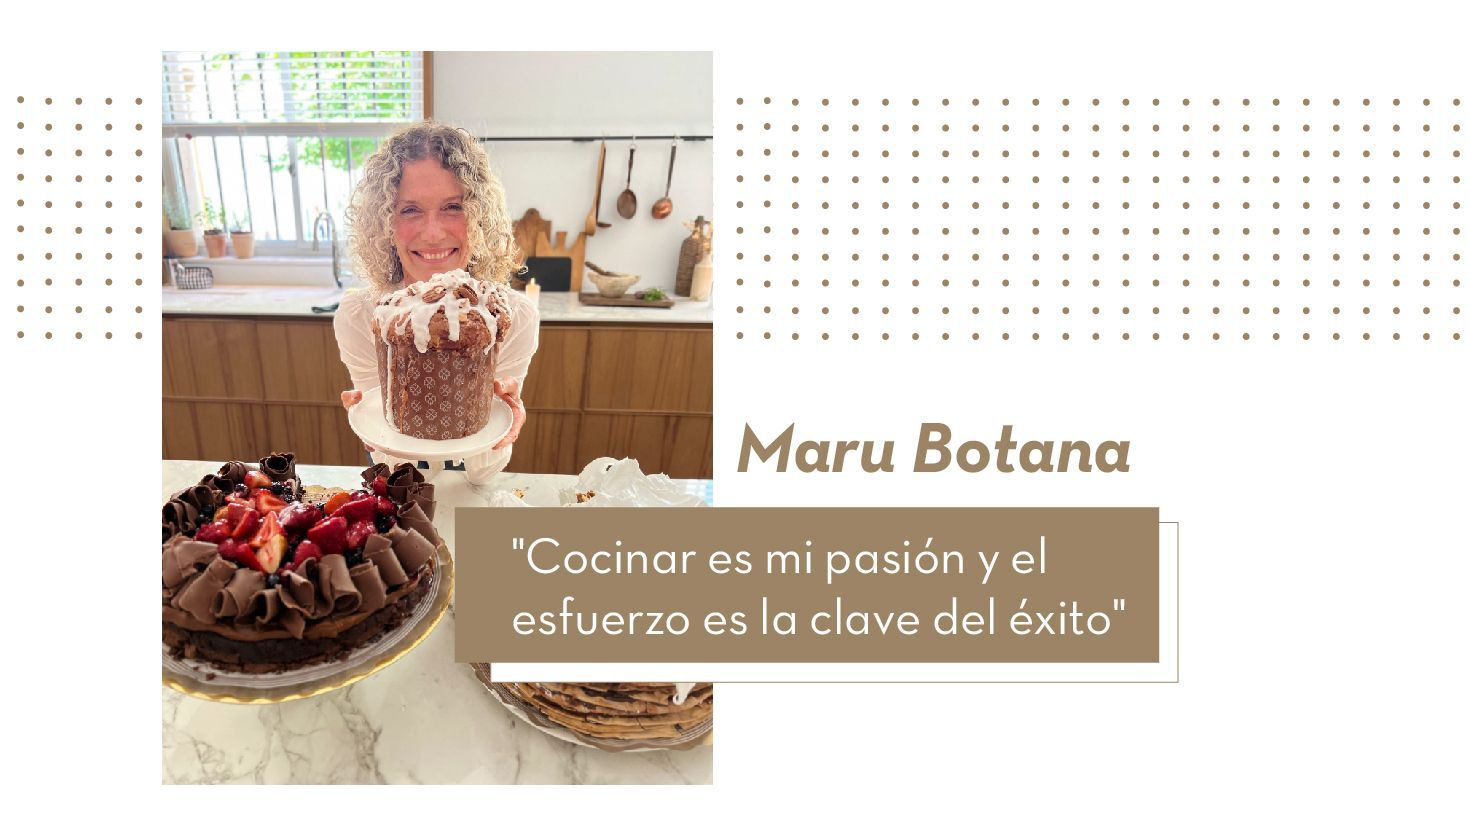 Maru Botana: "Cocinar es mi pasión y el esfuerzo es la clave del éxito"